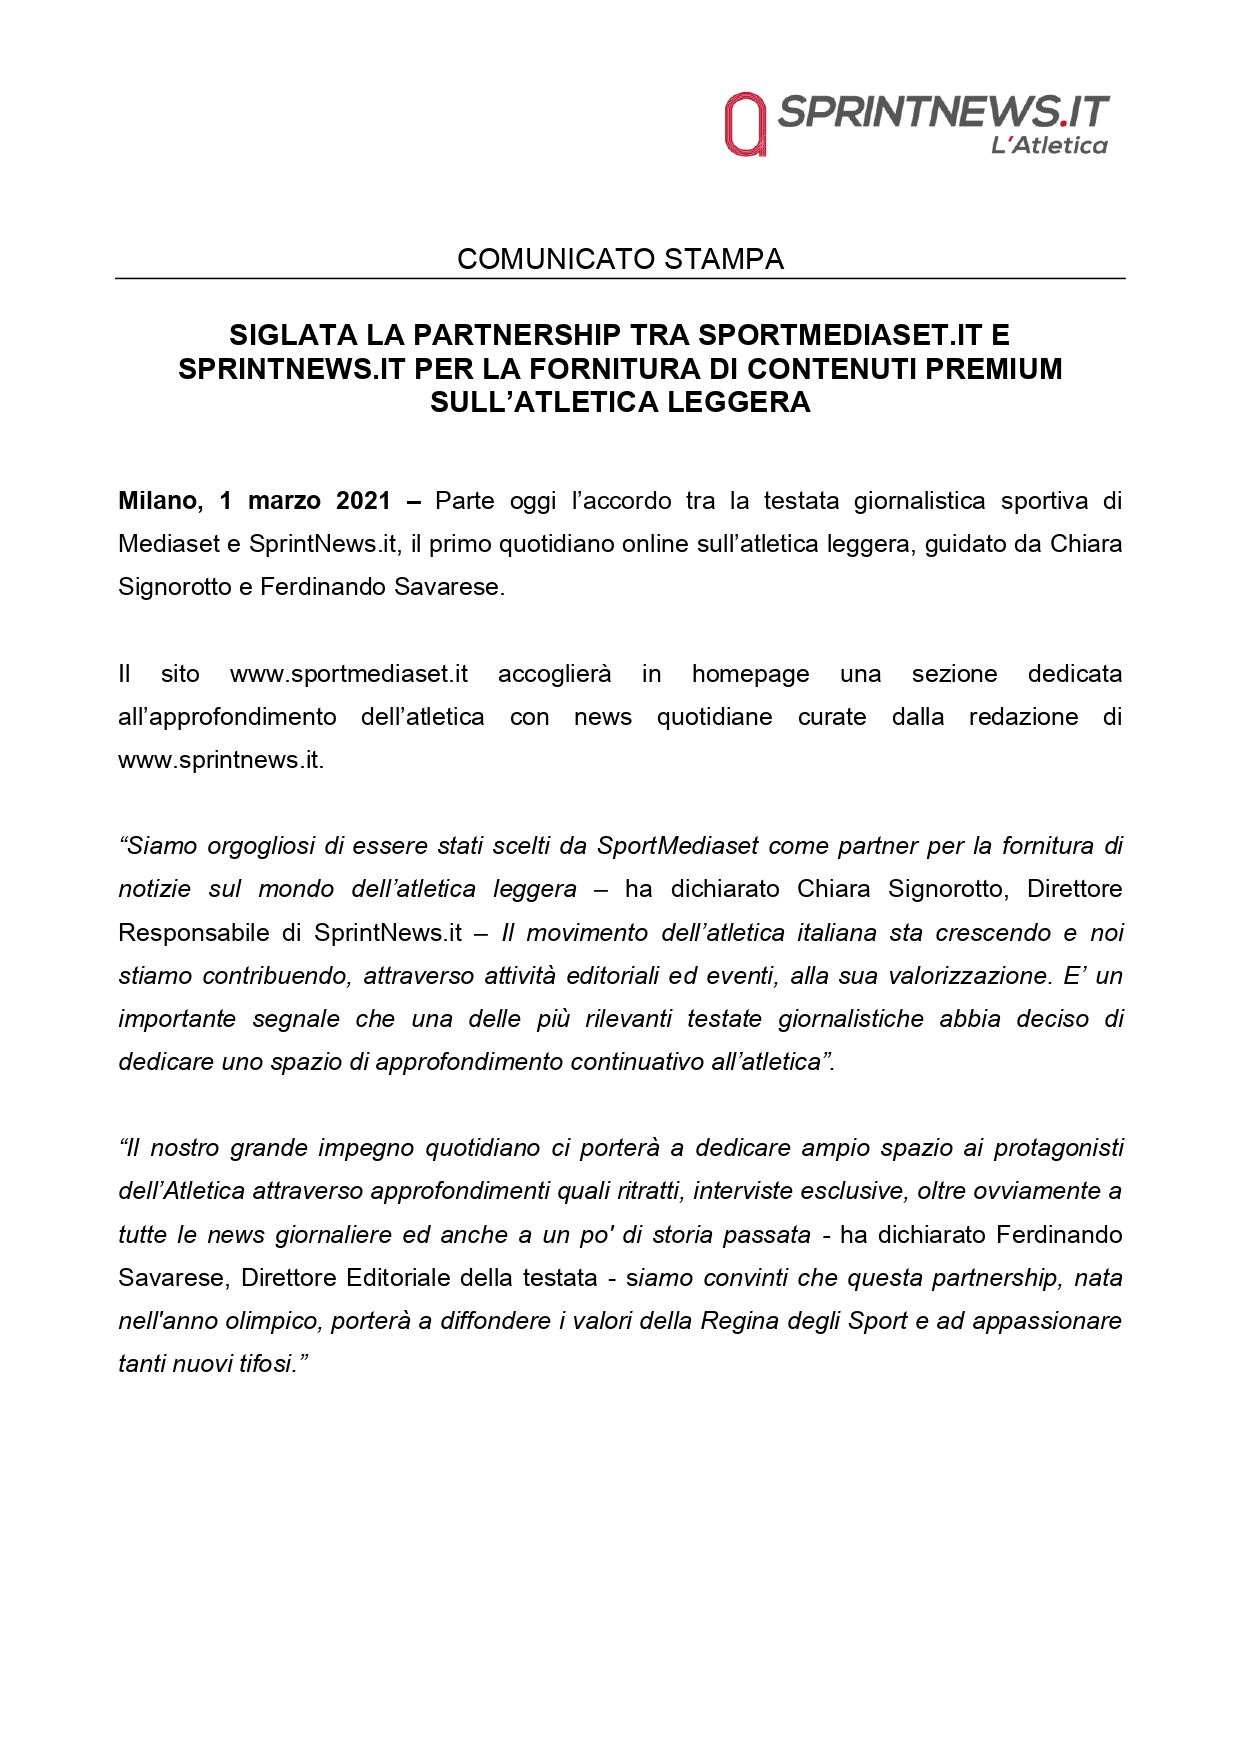 Comunicato stampa accordo SprintNews.it-SportMediaset.it